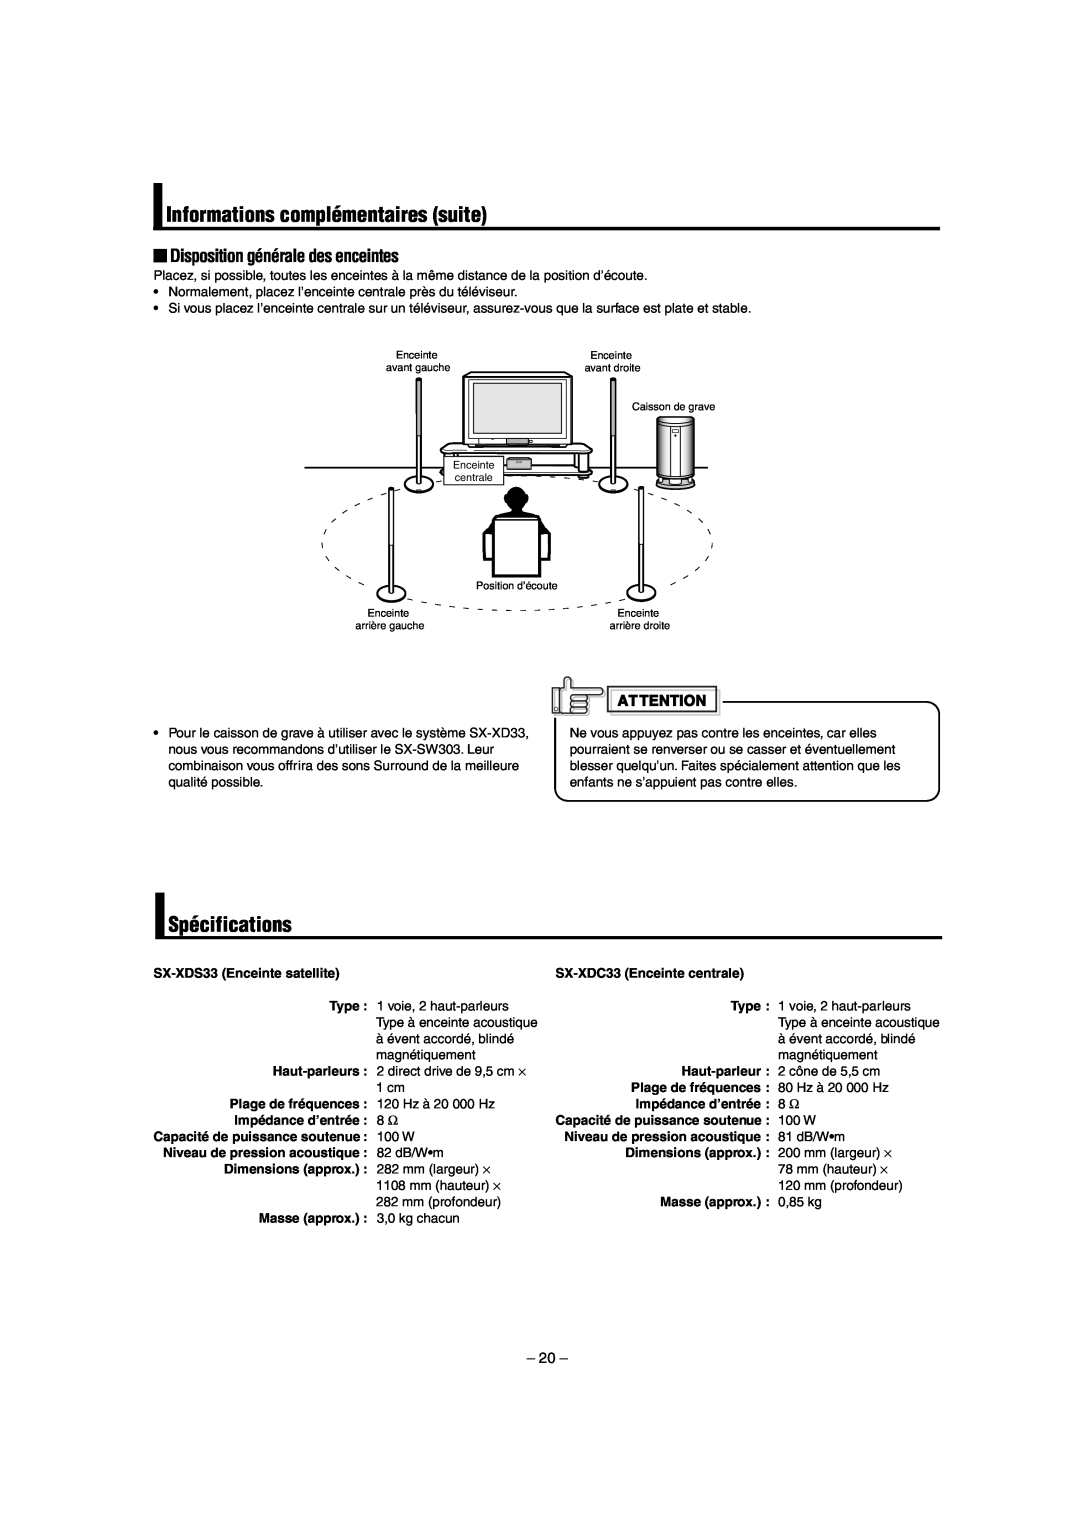 JVC LVT0953-001B manual Informations complémentaires suite, Spécifications, Disposition générale des enceintes 